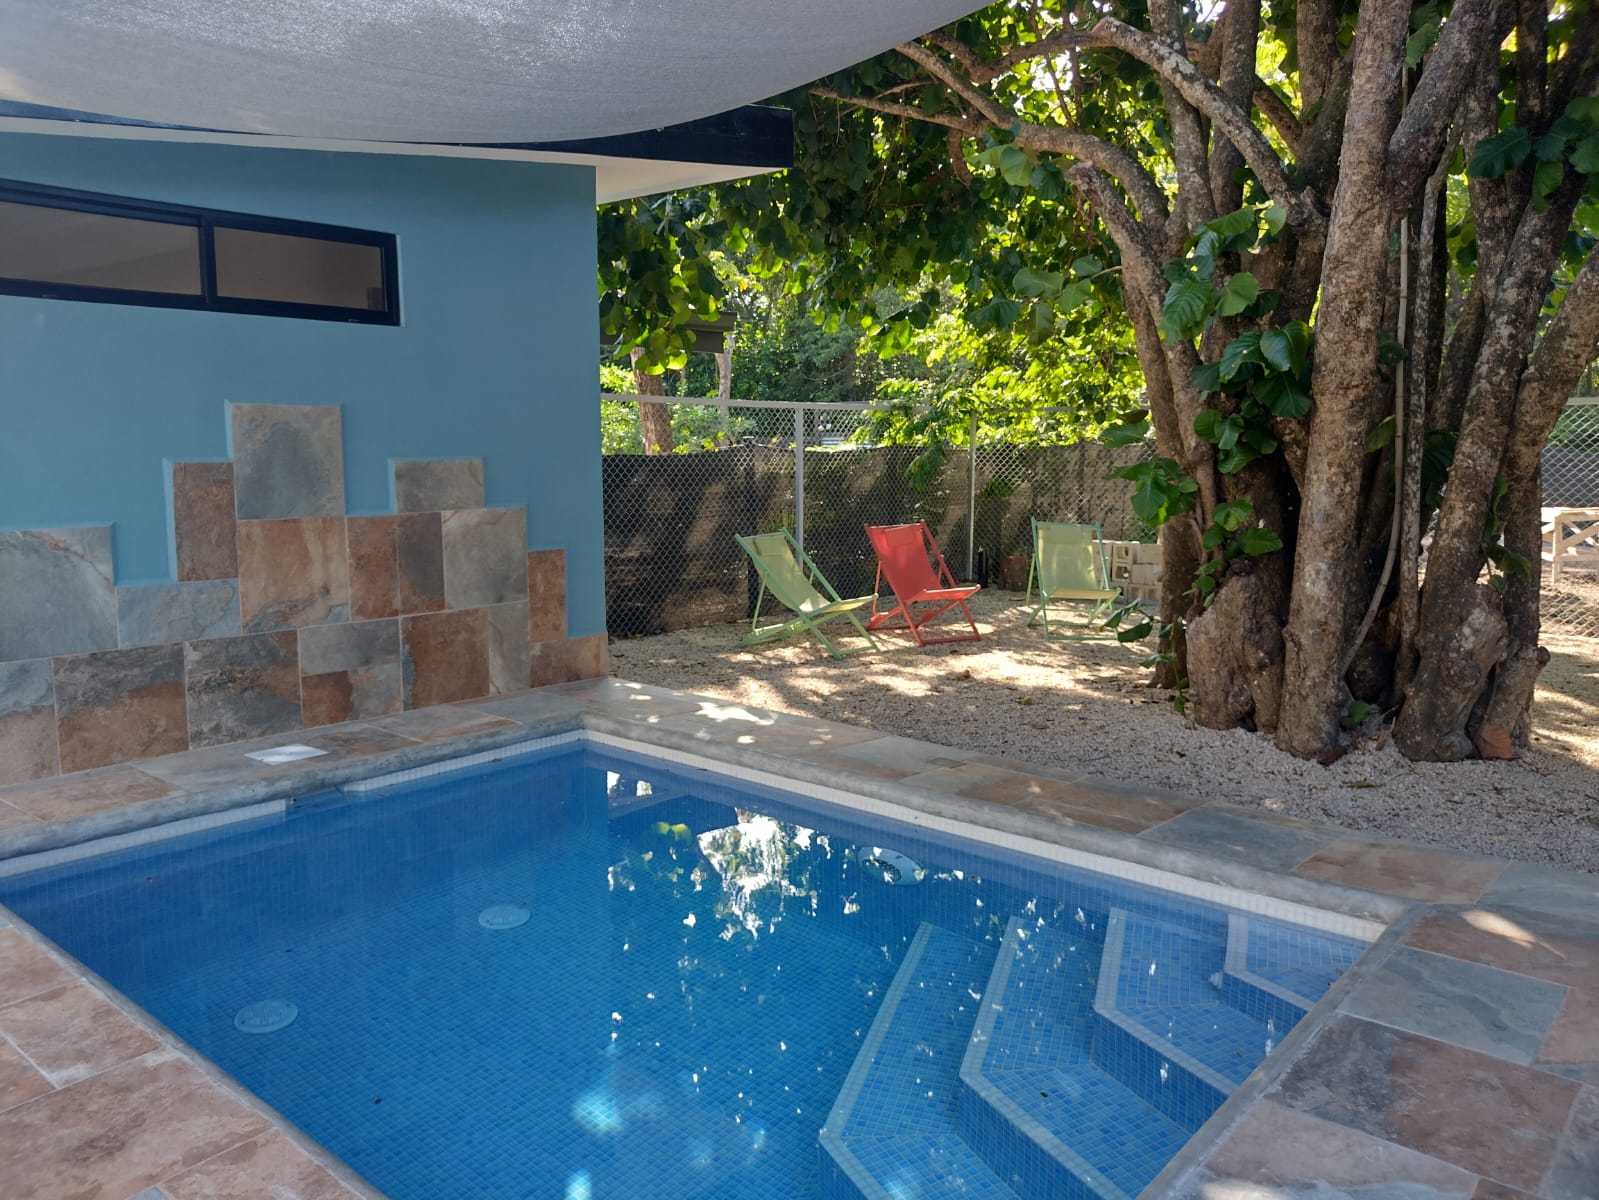 pool area of Casa espinoza home for sale samara costa rica